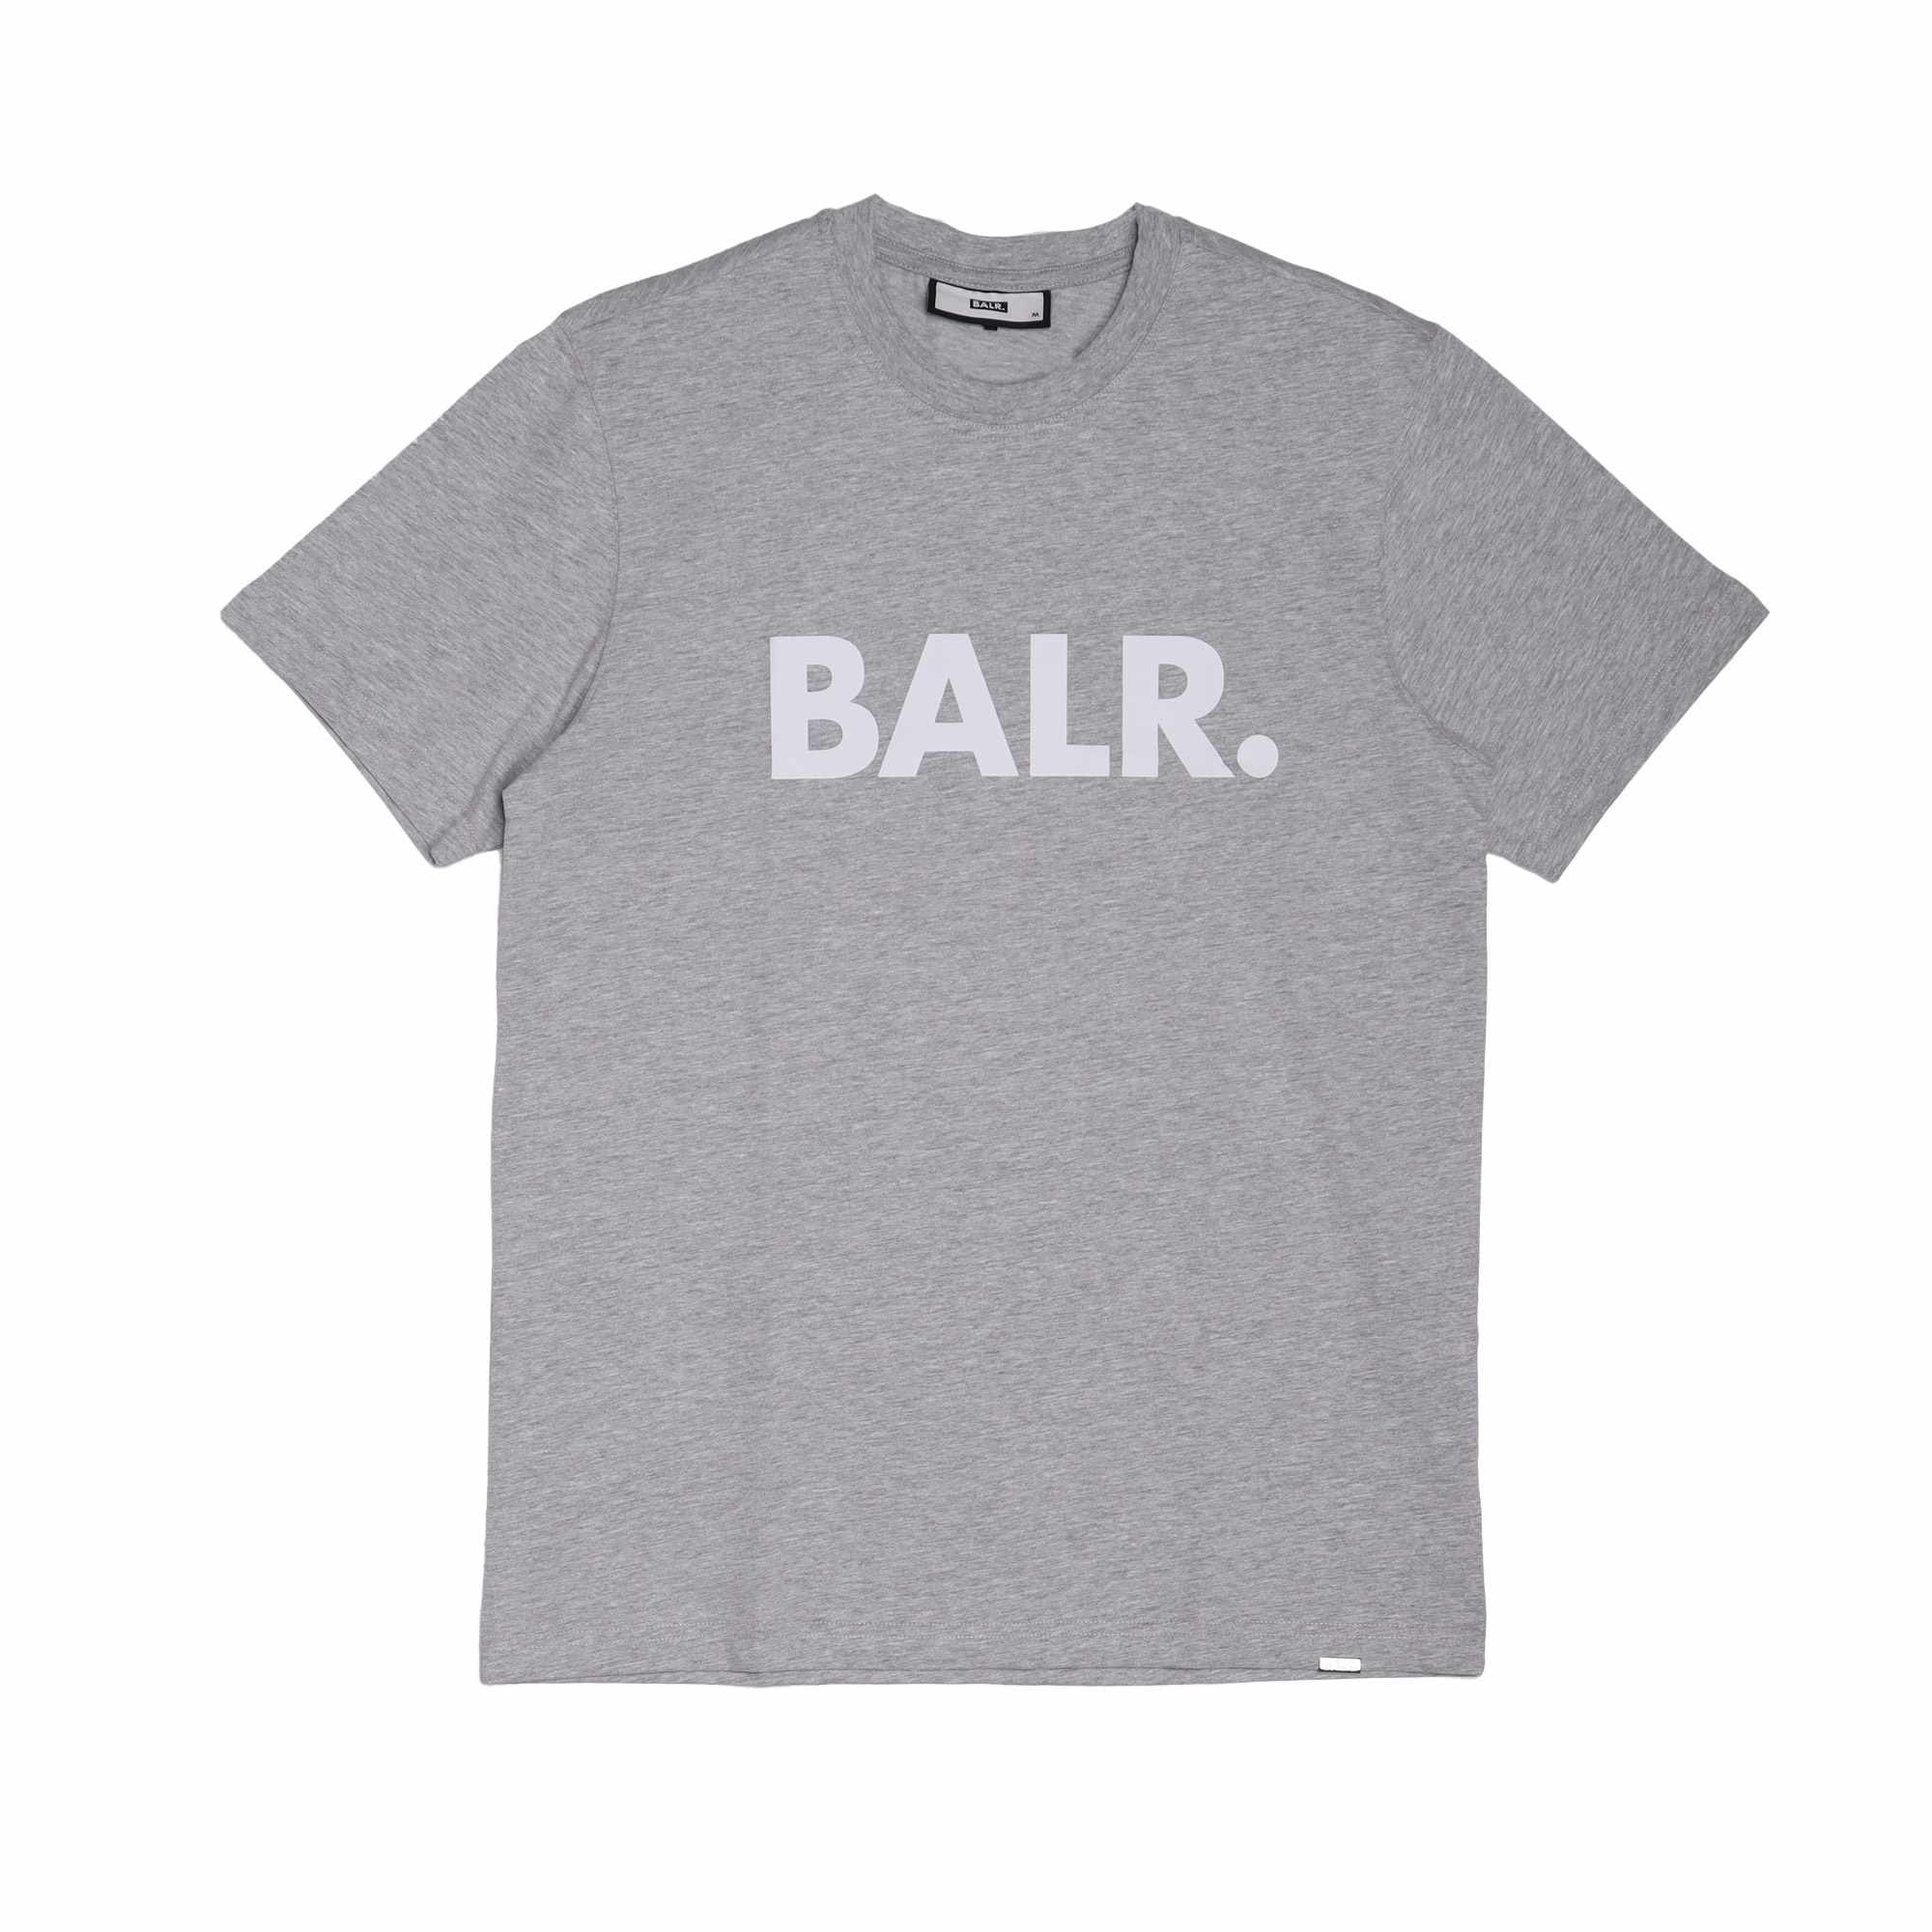 送料無料 ボーラー 半袖Tシャツ メンズ BRAND STRAIGHT T-SHIRT BALR. B1112.1048 ネイビー 紺 ウエア  トップス ロゴ